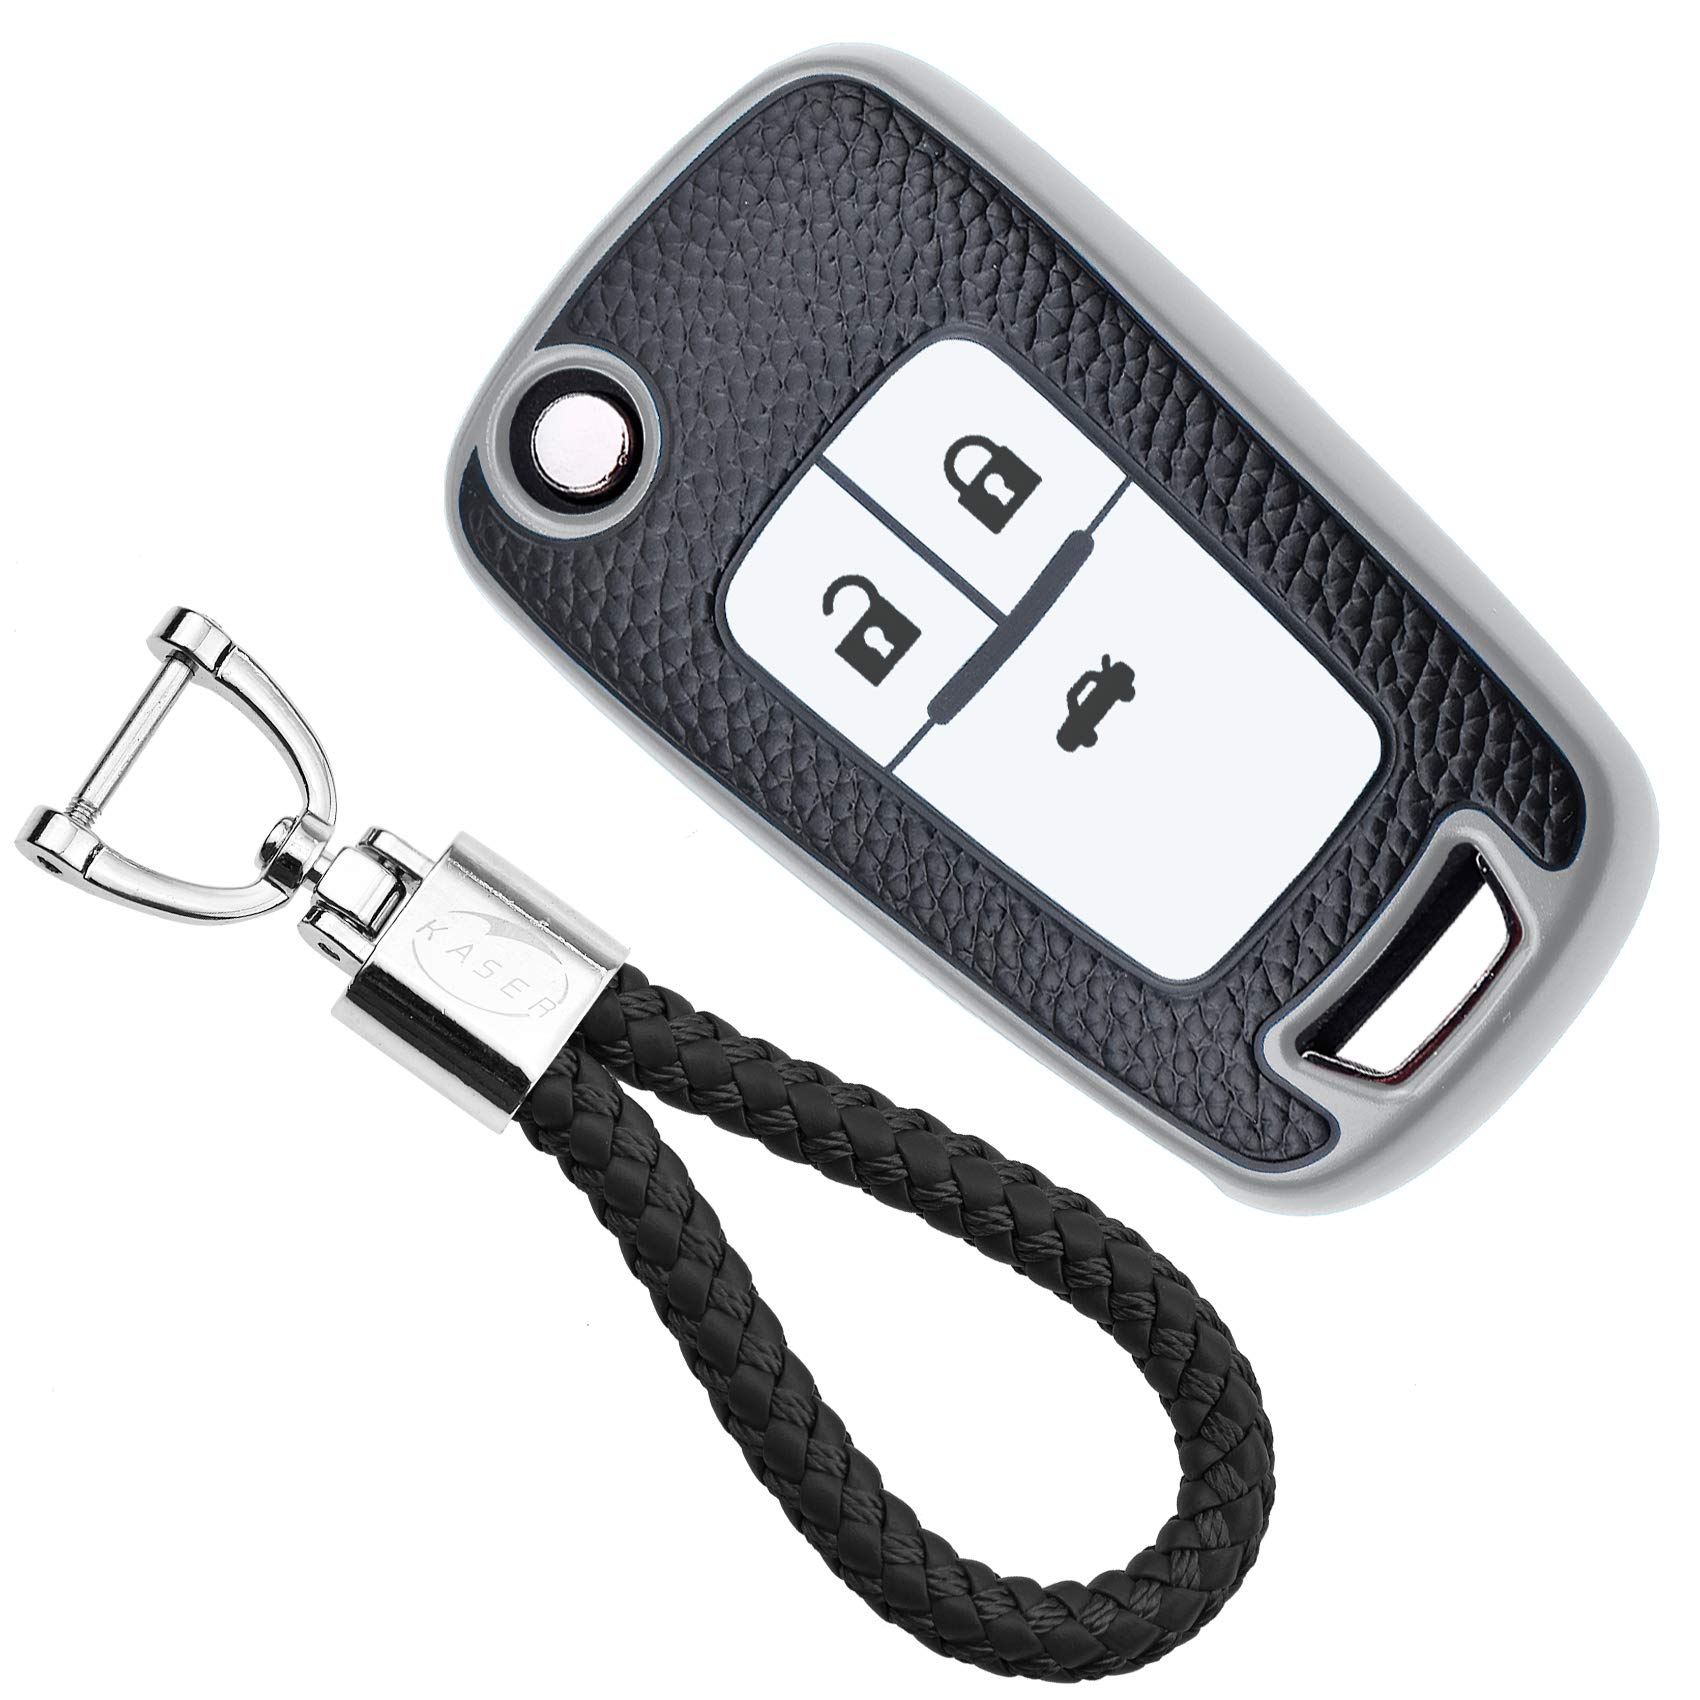 KASER Autoschlüssel Hülle kompatibel für Chevrolet Opel Mokka Astra Corsa Cruze Aveo Zafira Schlüsselanhänger Abdeckung Silikon Schutzhülle Ledereffekt (Silber) von Kaser